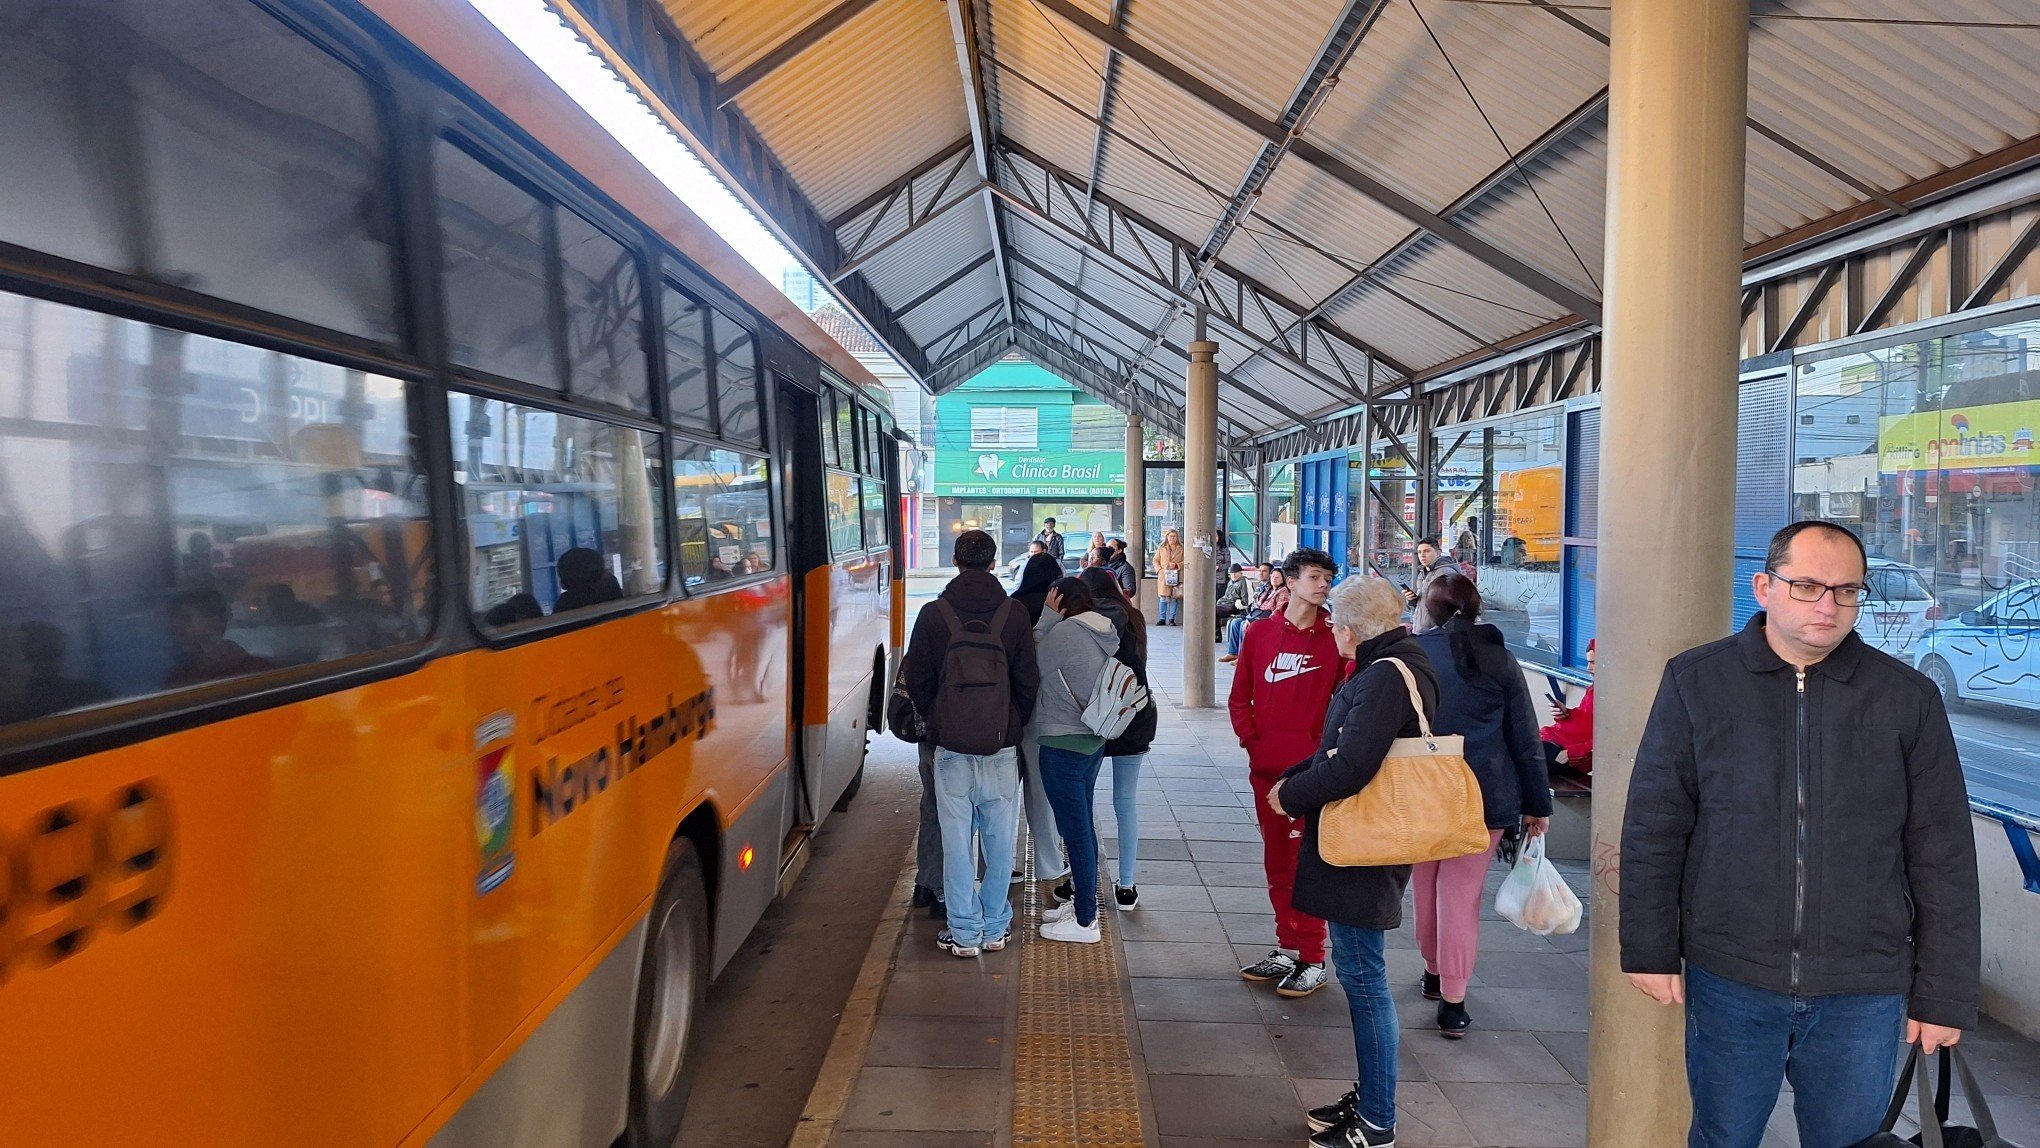 NOVO HAMBURGO: Confusão nos horários dos ônibus marca dia em que grade completa entra em operação; veja o que dizem usuários